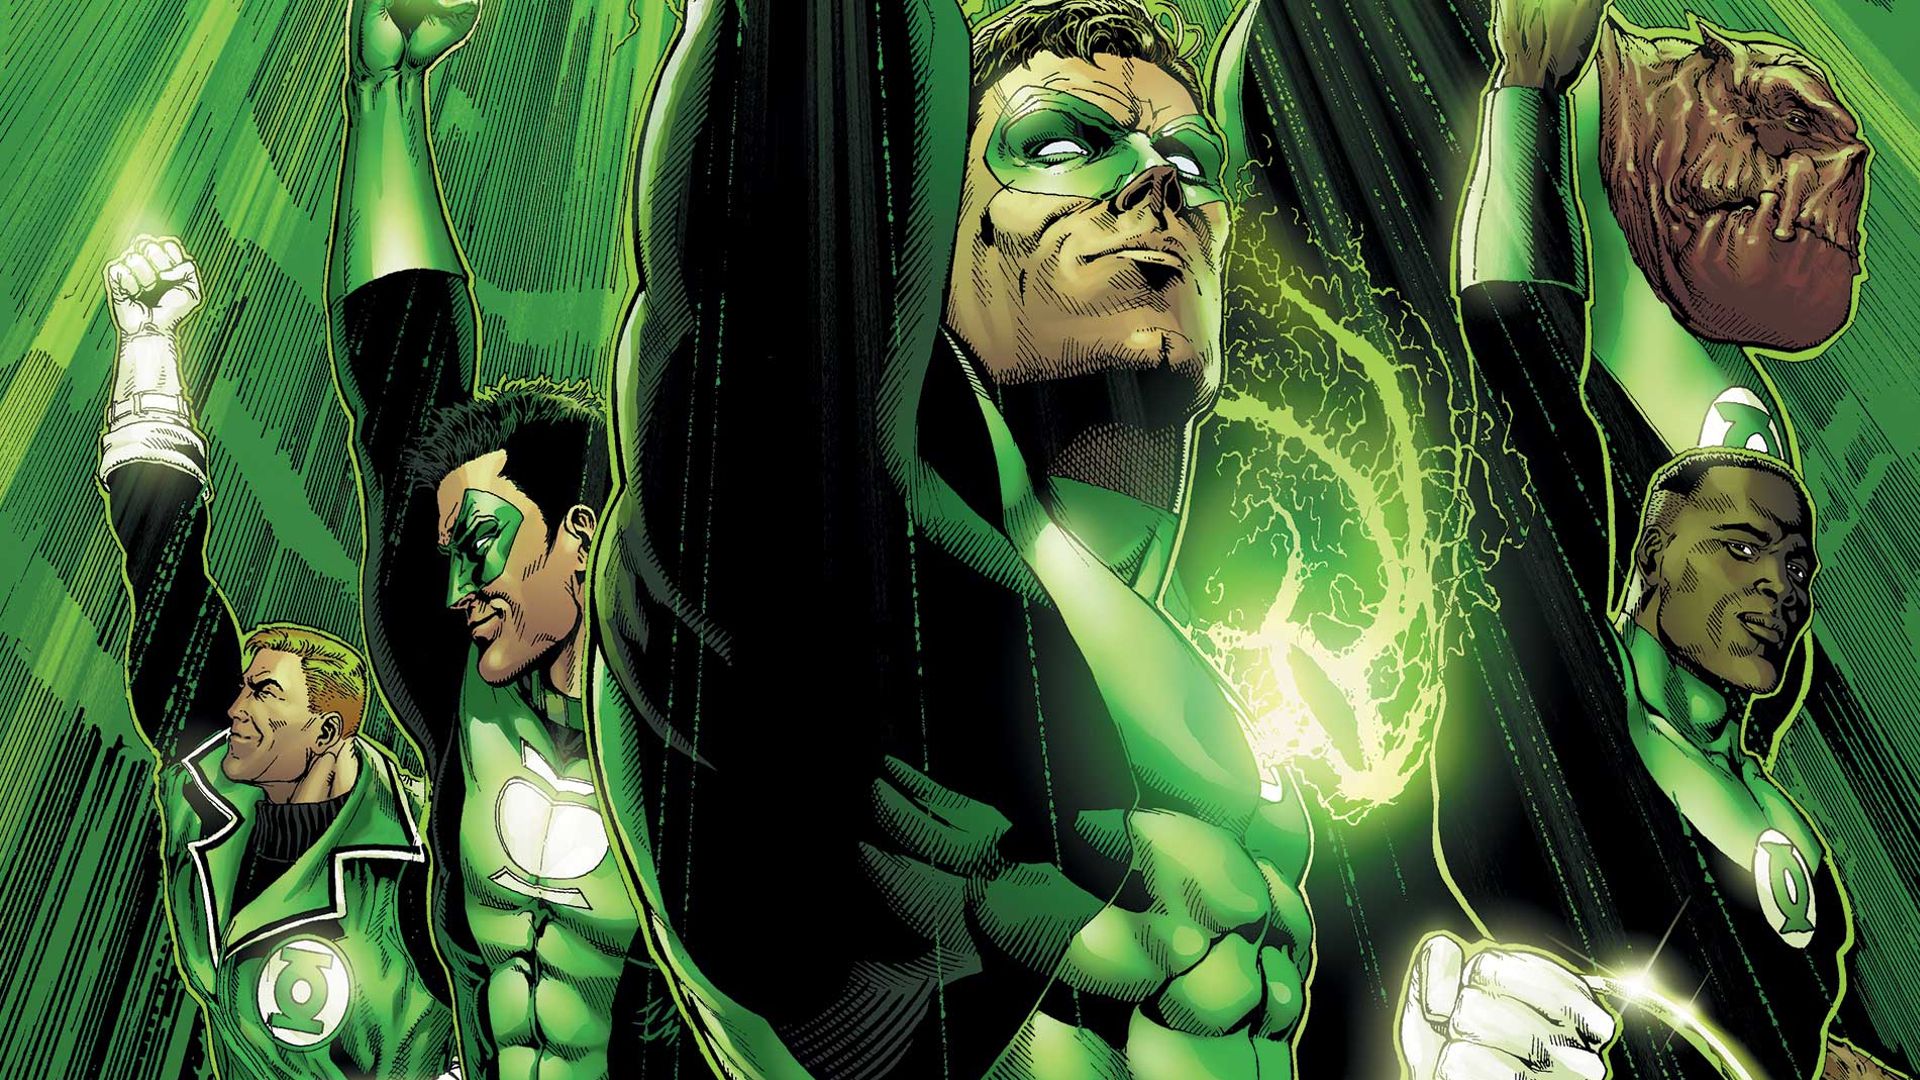 Green Lantern DC Comics